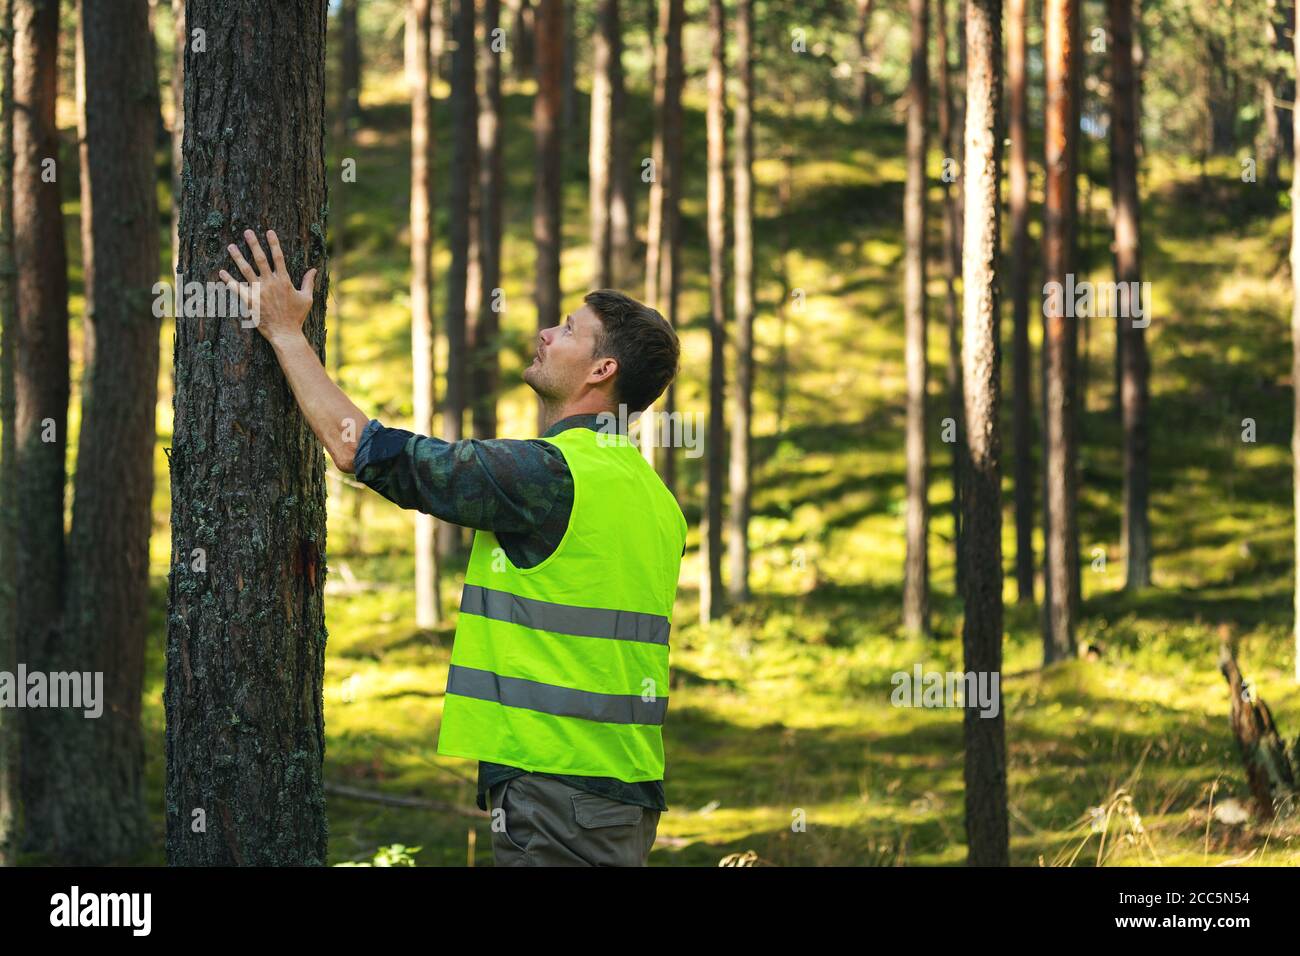 ingegneria forestale e gestione, risorse rinnovabili - forester controllo qualità di pino Foto Stock